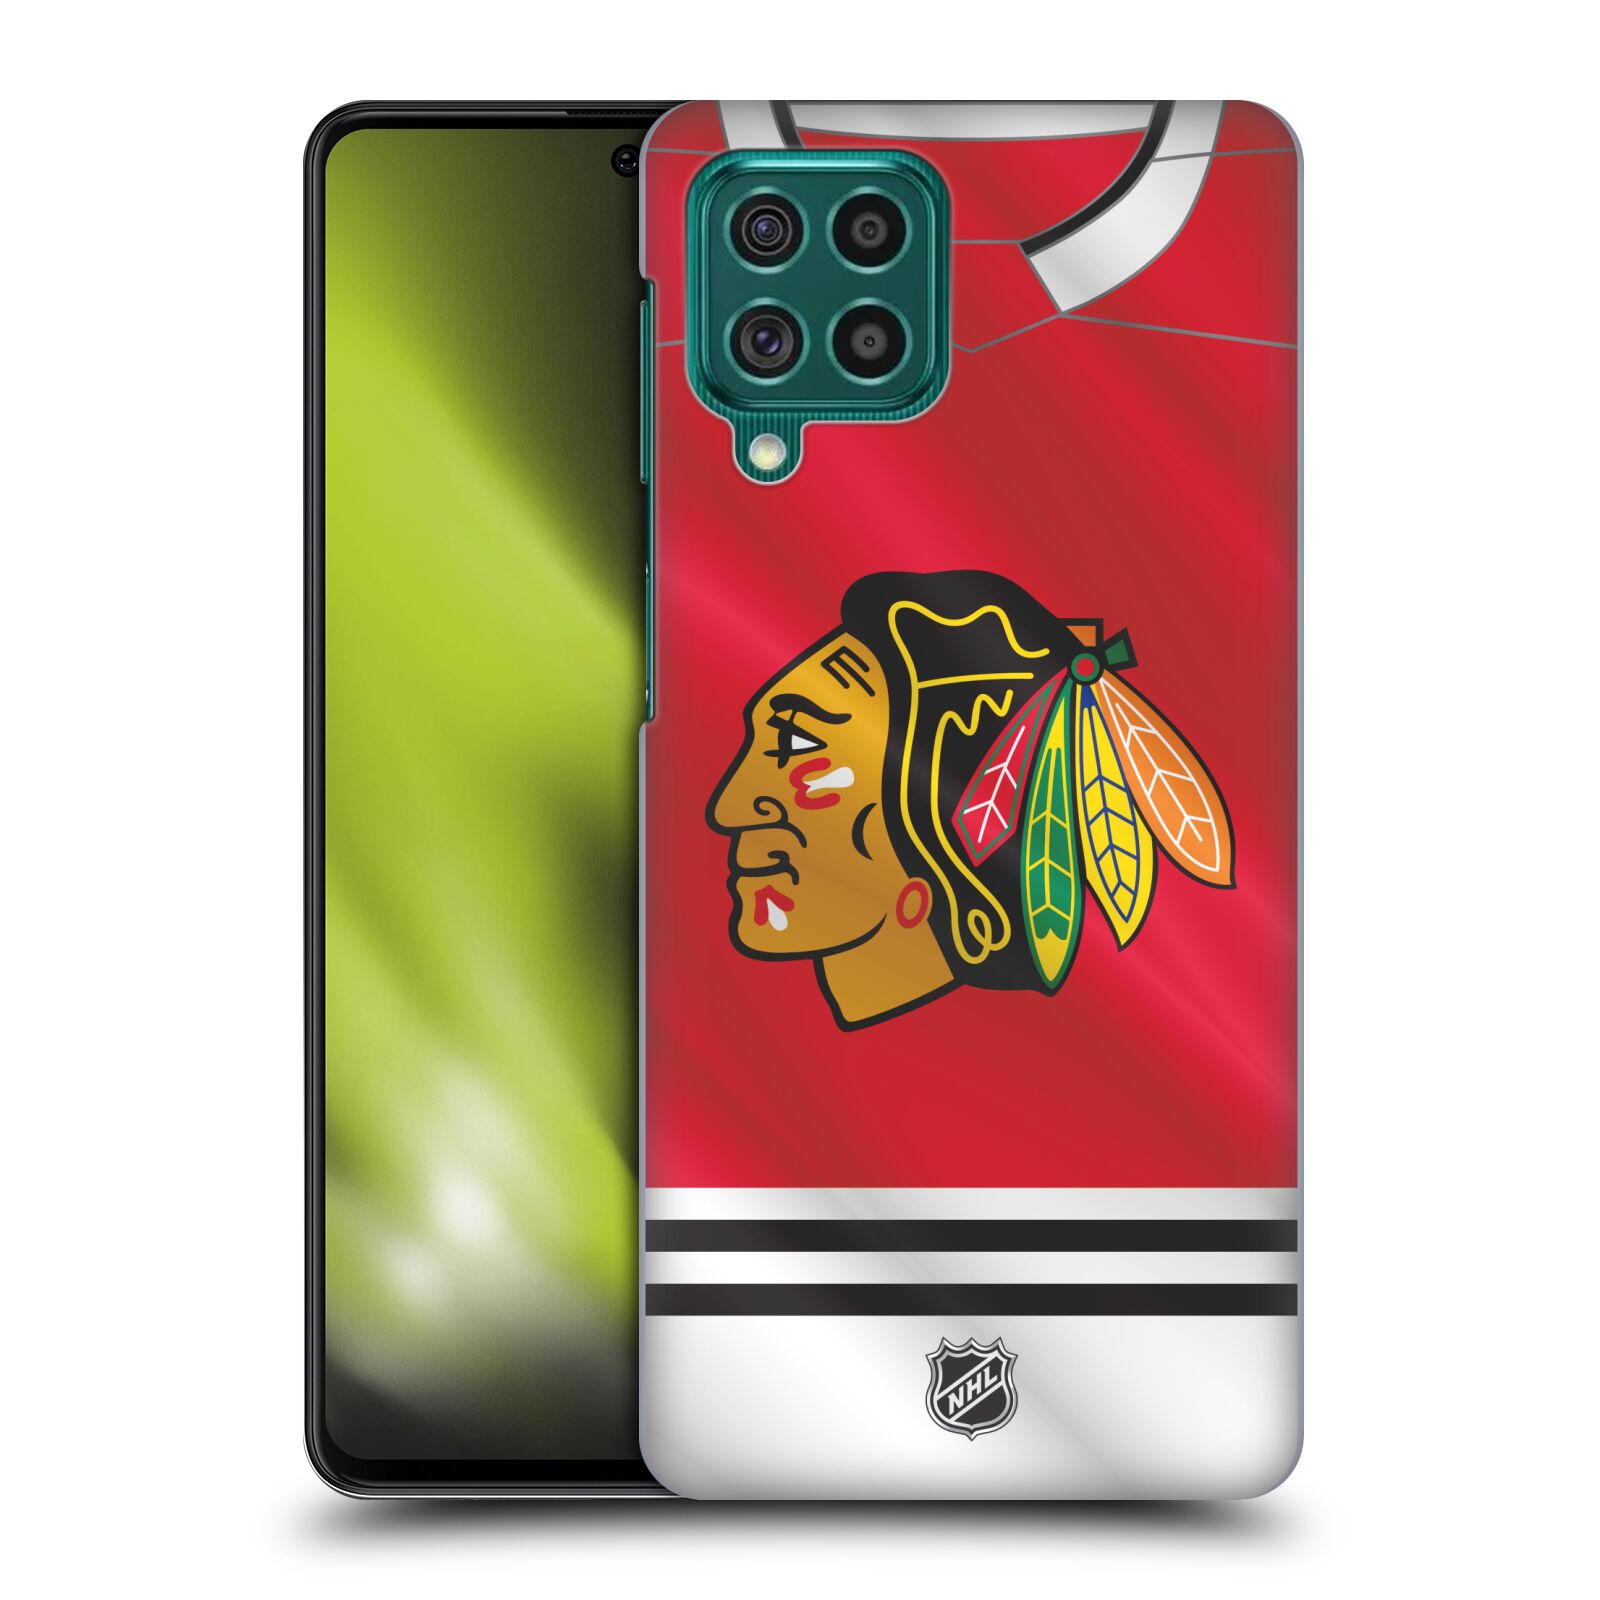 Pouzdro na mobil Samsung Galaxy M62 - HEAD CASE - Hokej NHL - Chicago Blackhawks - dres